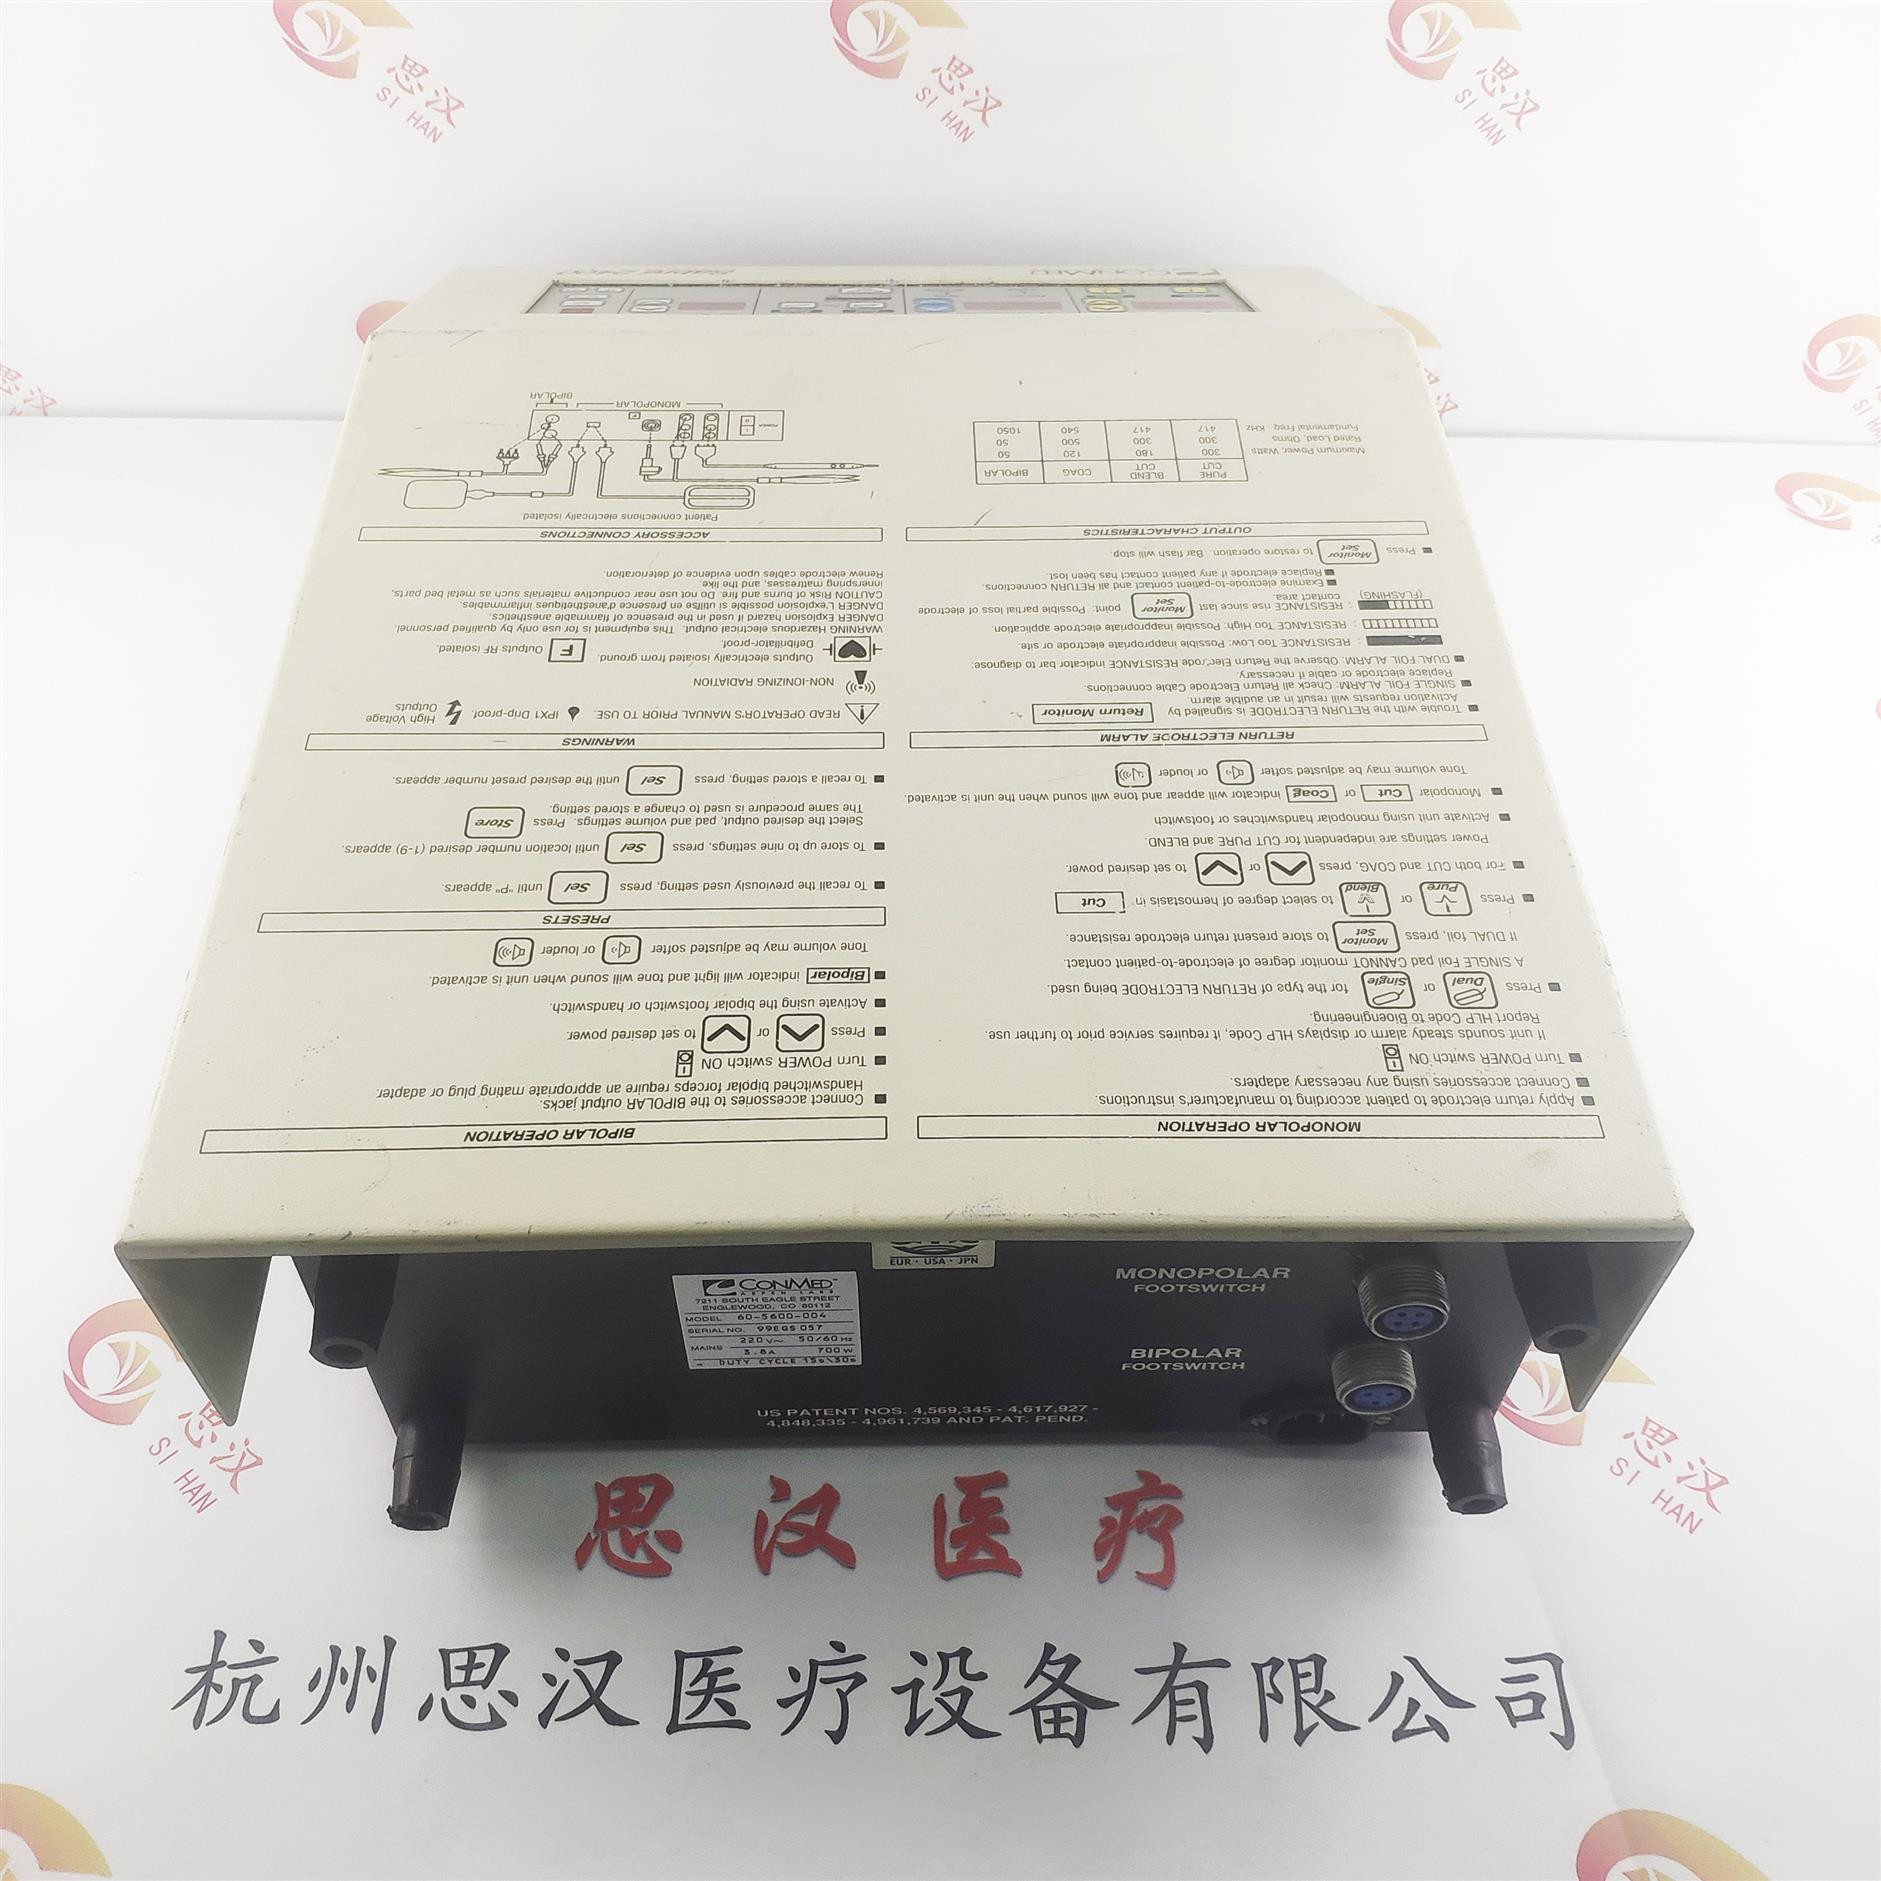 杭州思汉医疗设备有限公司 浙江Sabre 2400电源维修电话